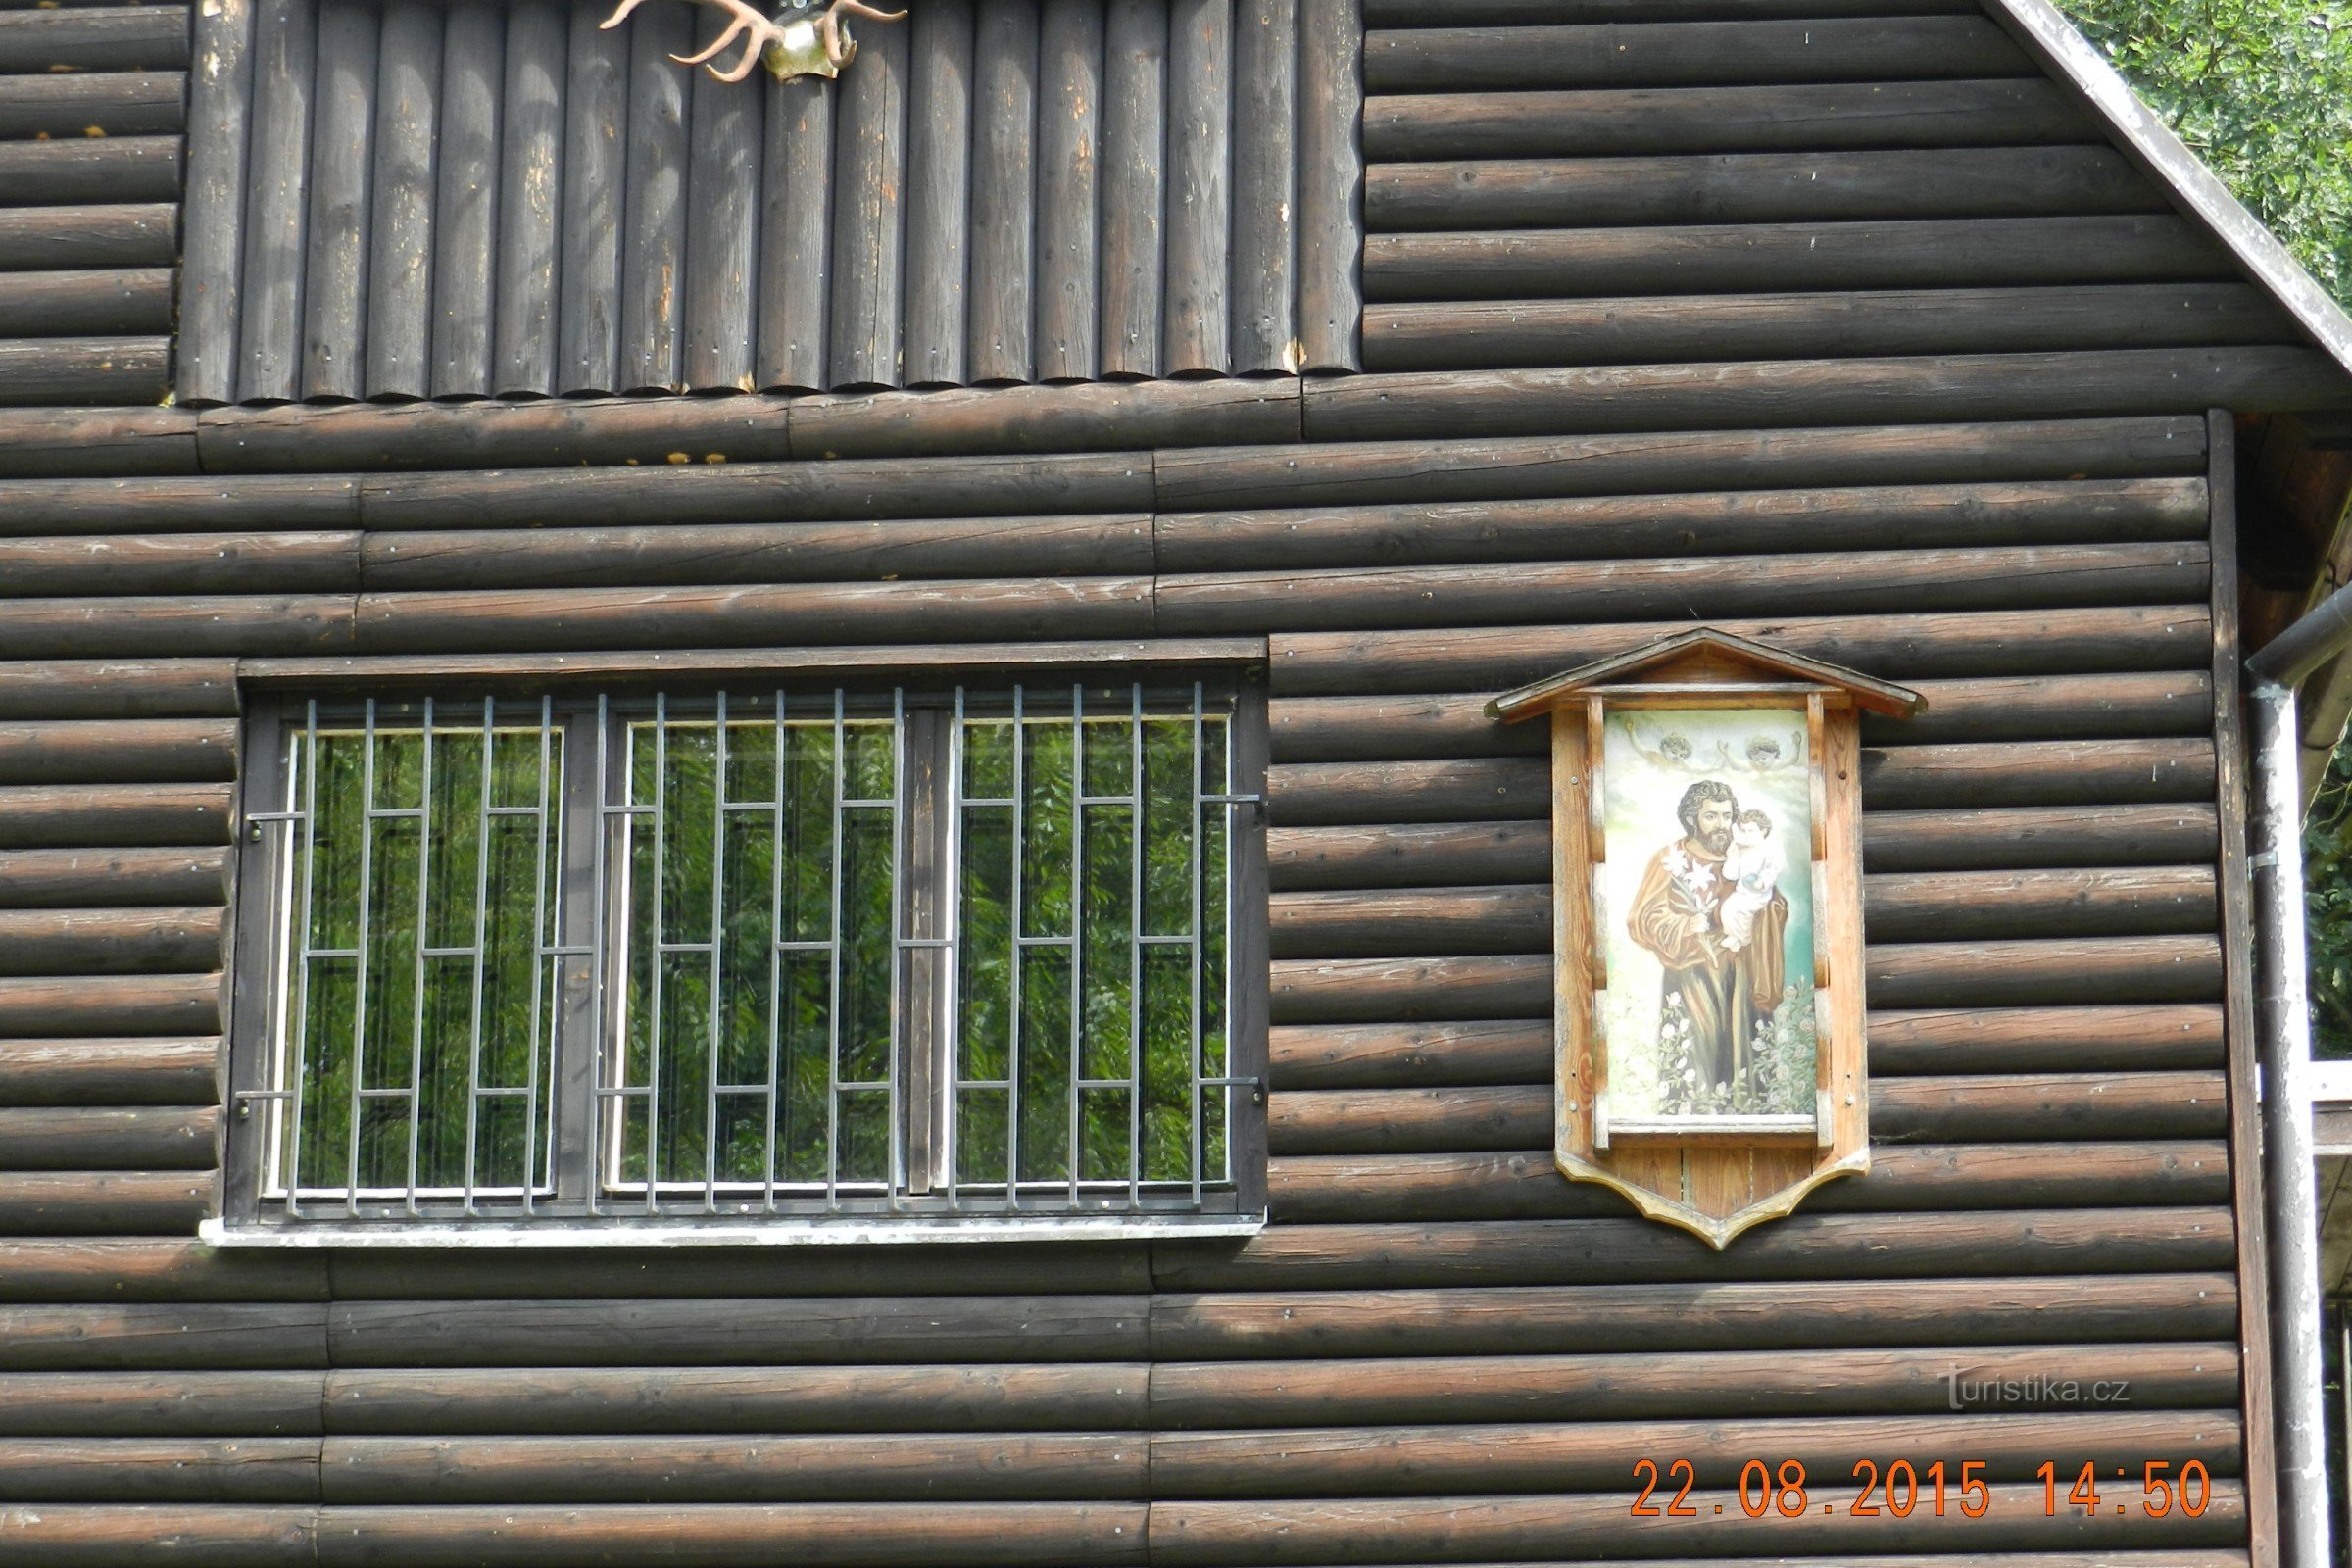 Hrabová, Dubicko - nhà nghỉ săn bắn của Thánh Joseph (du ngoạn bằng xe đẩy, nướng bánh sau